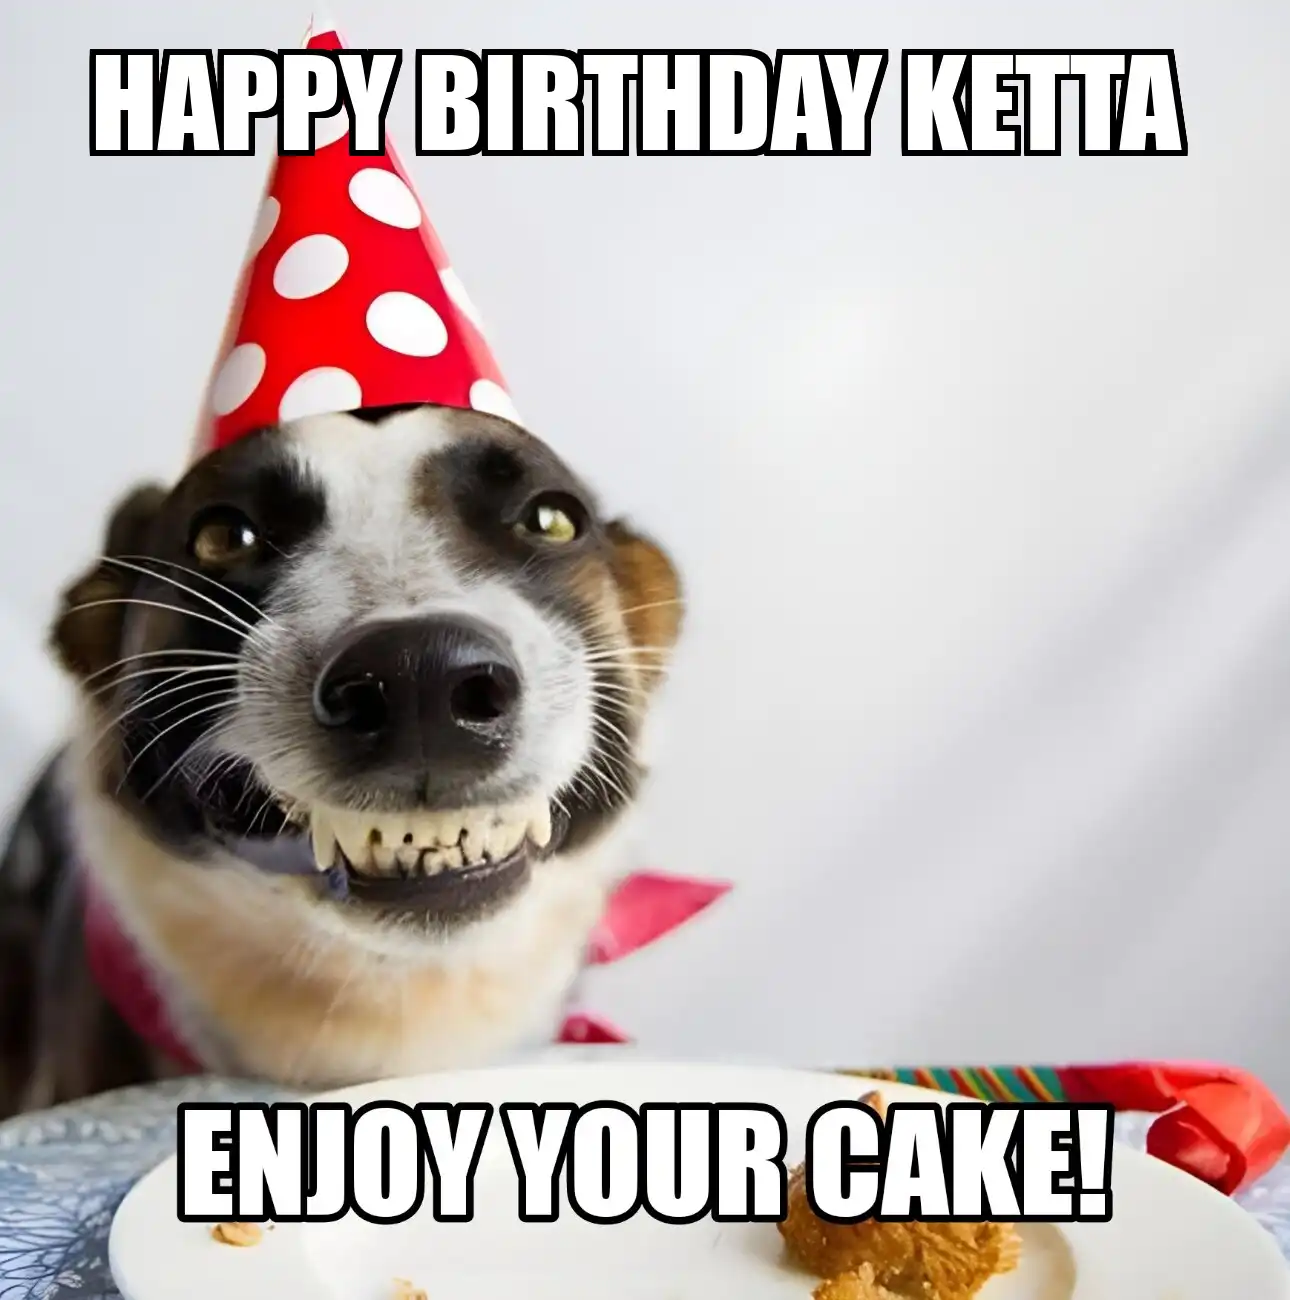 Happy Birthday Ketta Enjoy Your Cake Dog Meme